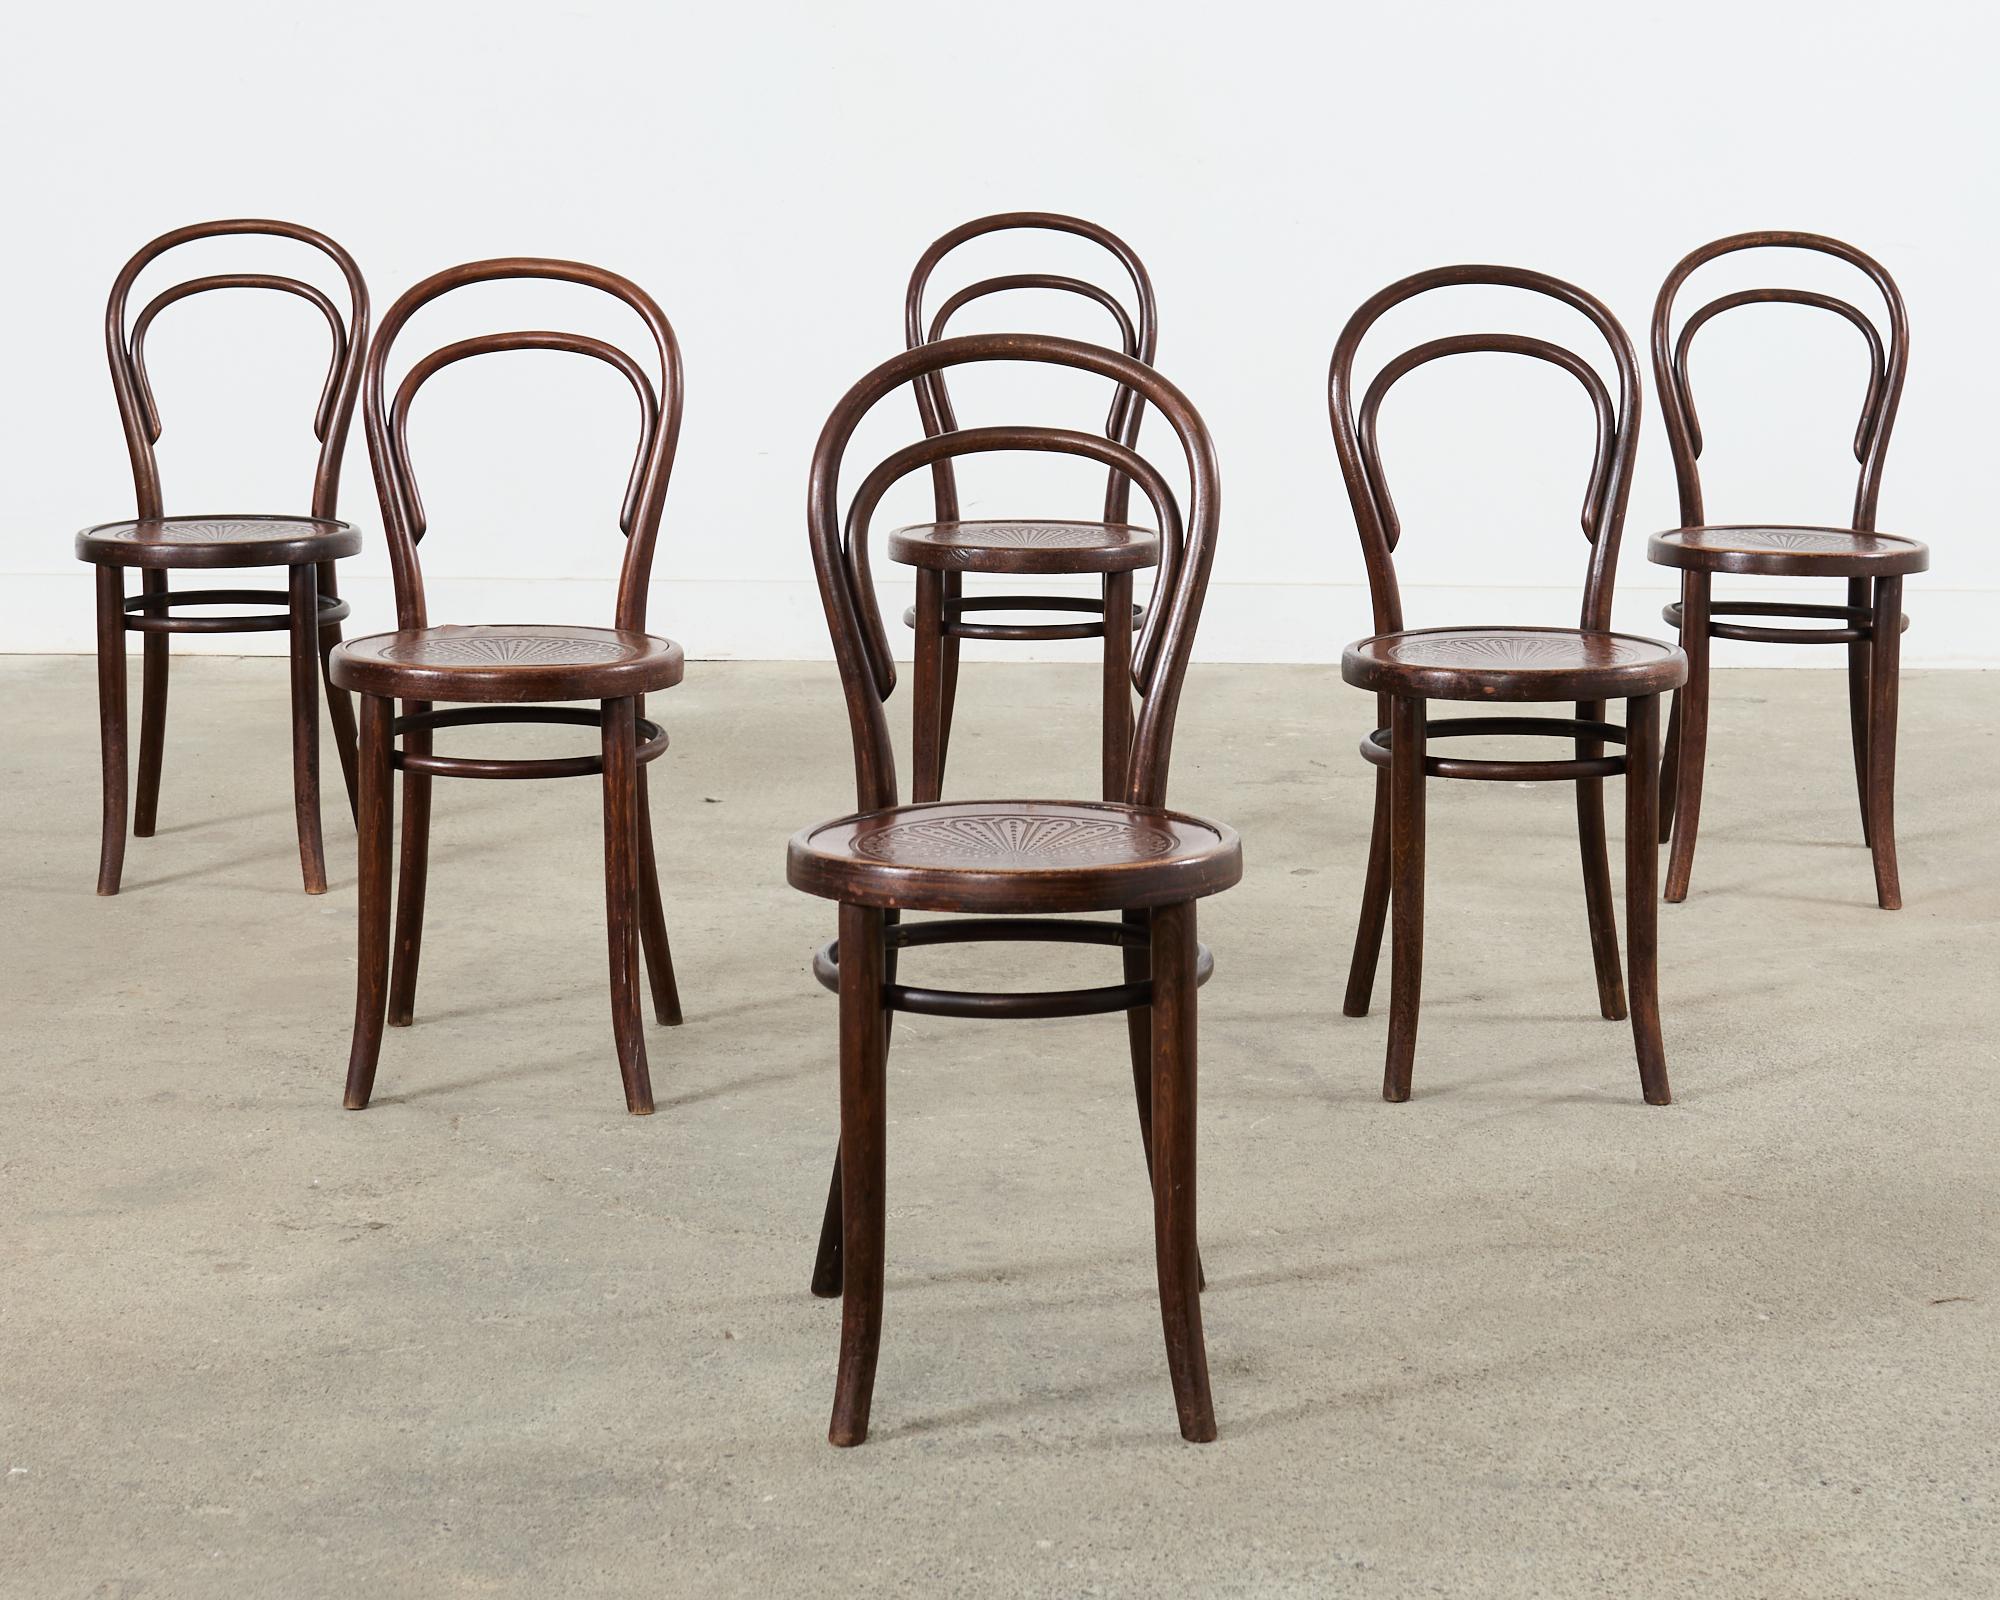 Ensemble iconique de six chaises de bistro ou de café en bois courbé Thonet n° 14 du début du XIXe siècle, assorties. Surnommée la 